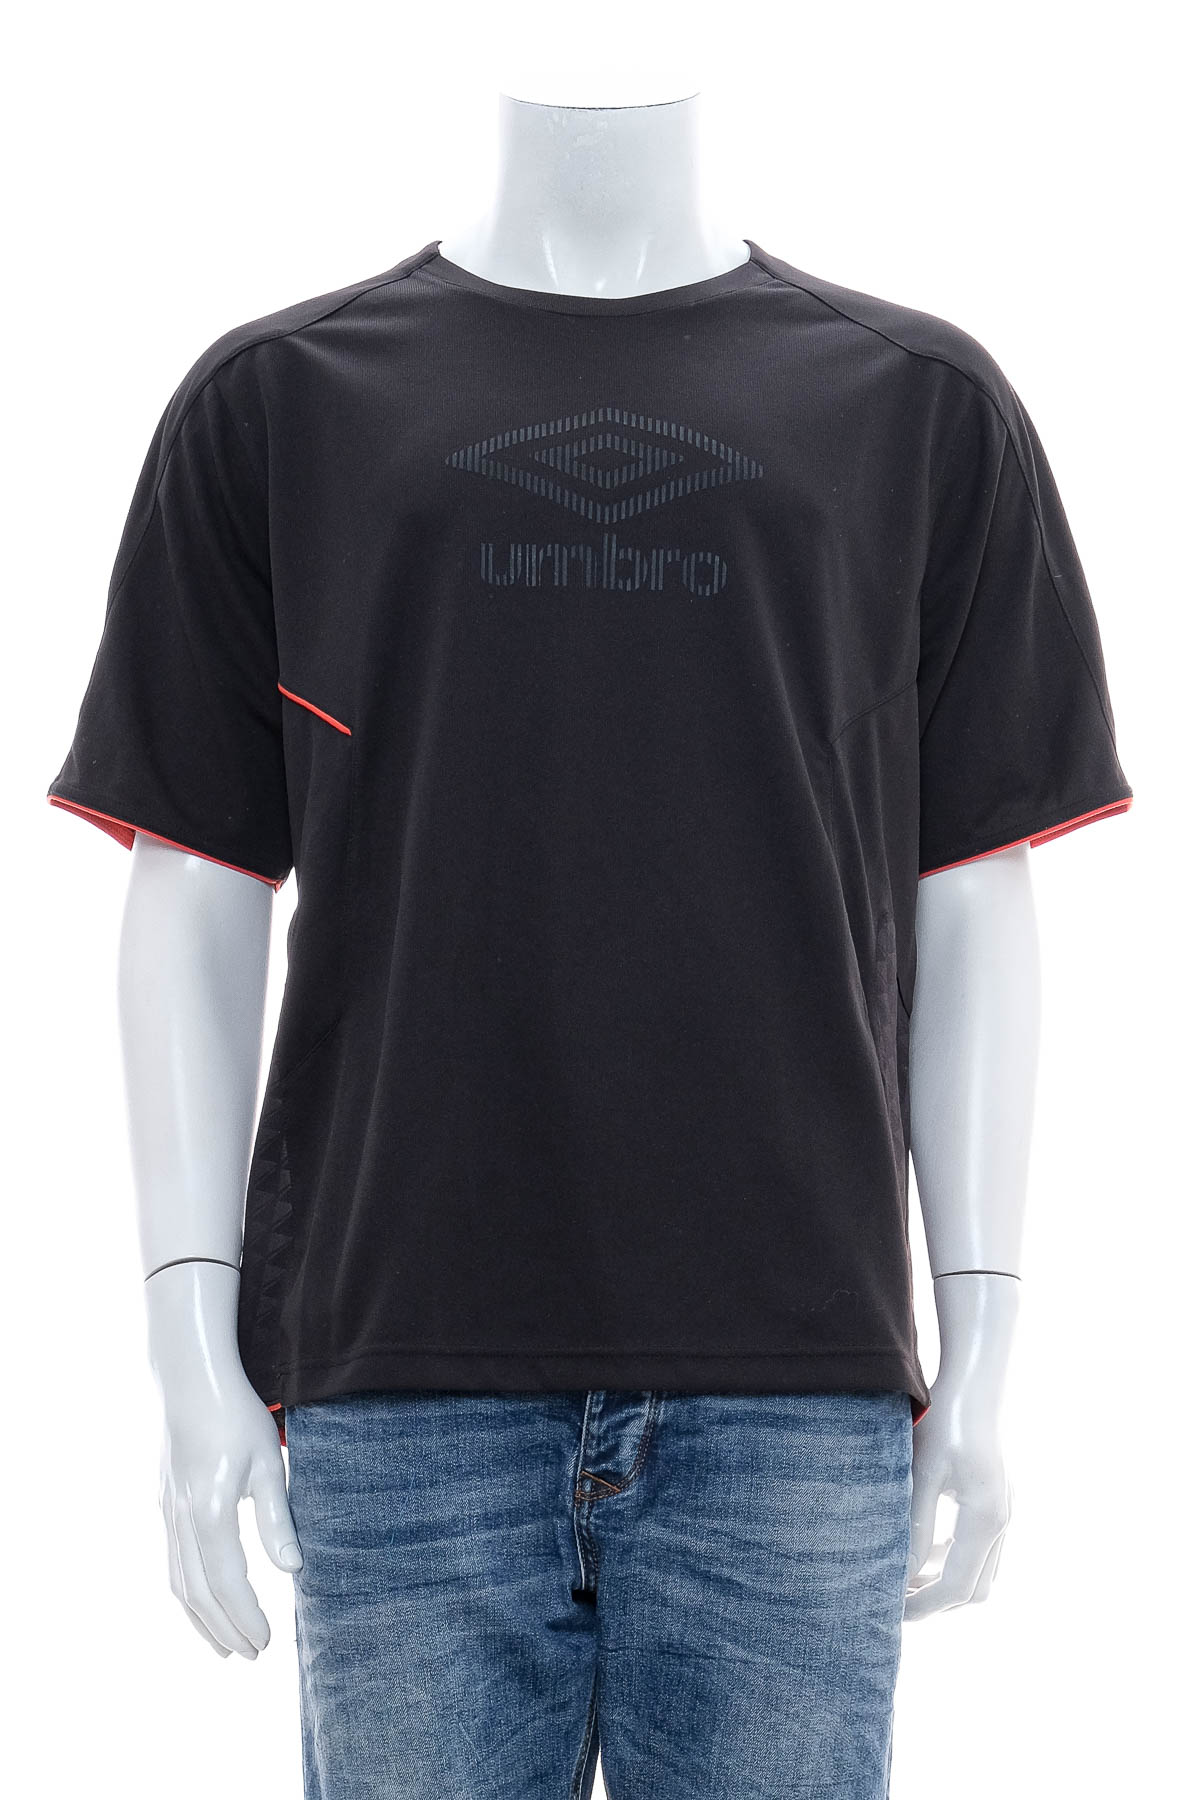 Ανδρικό μπλουζάκι - Umbro - 0